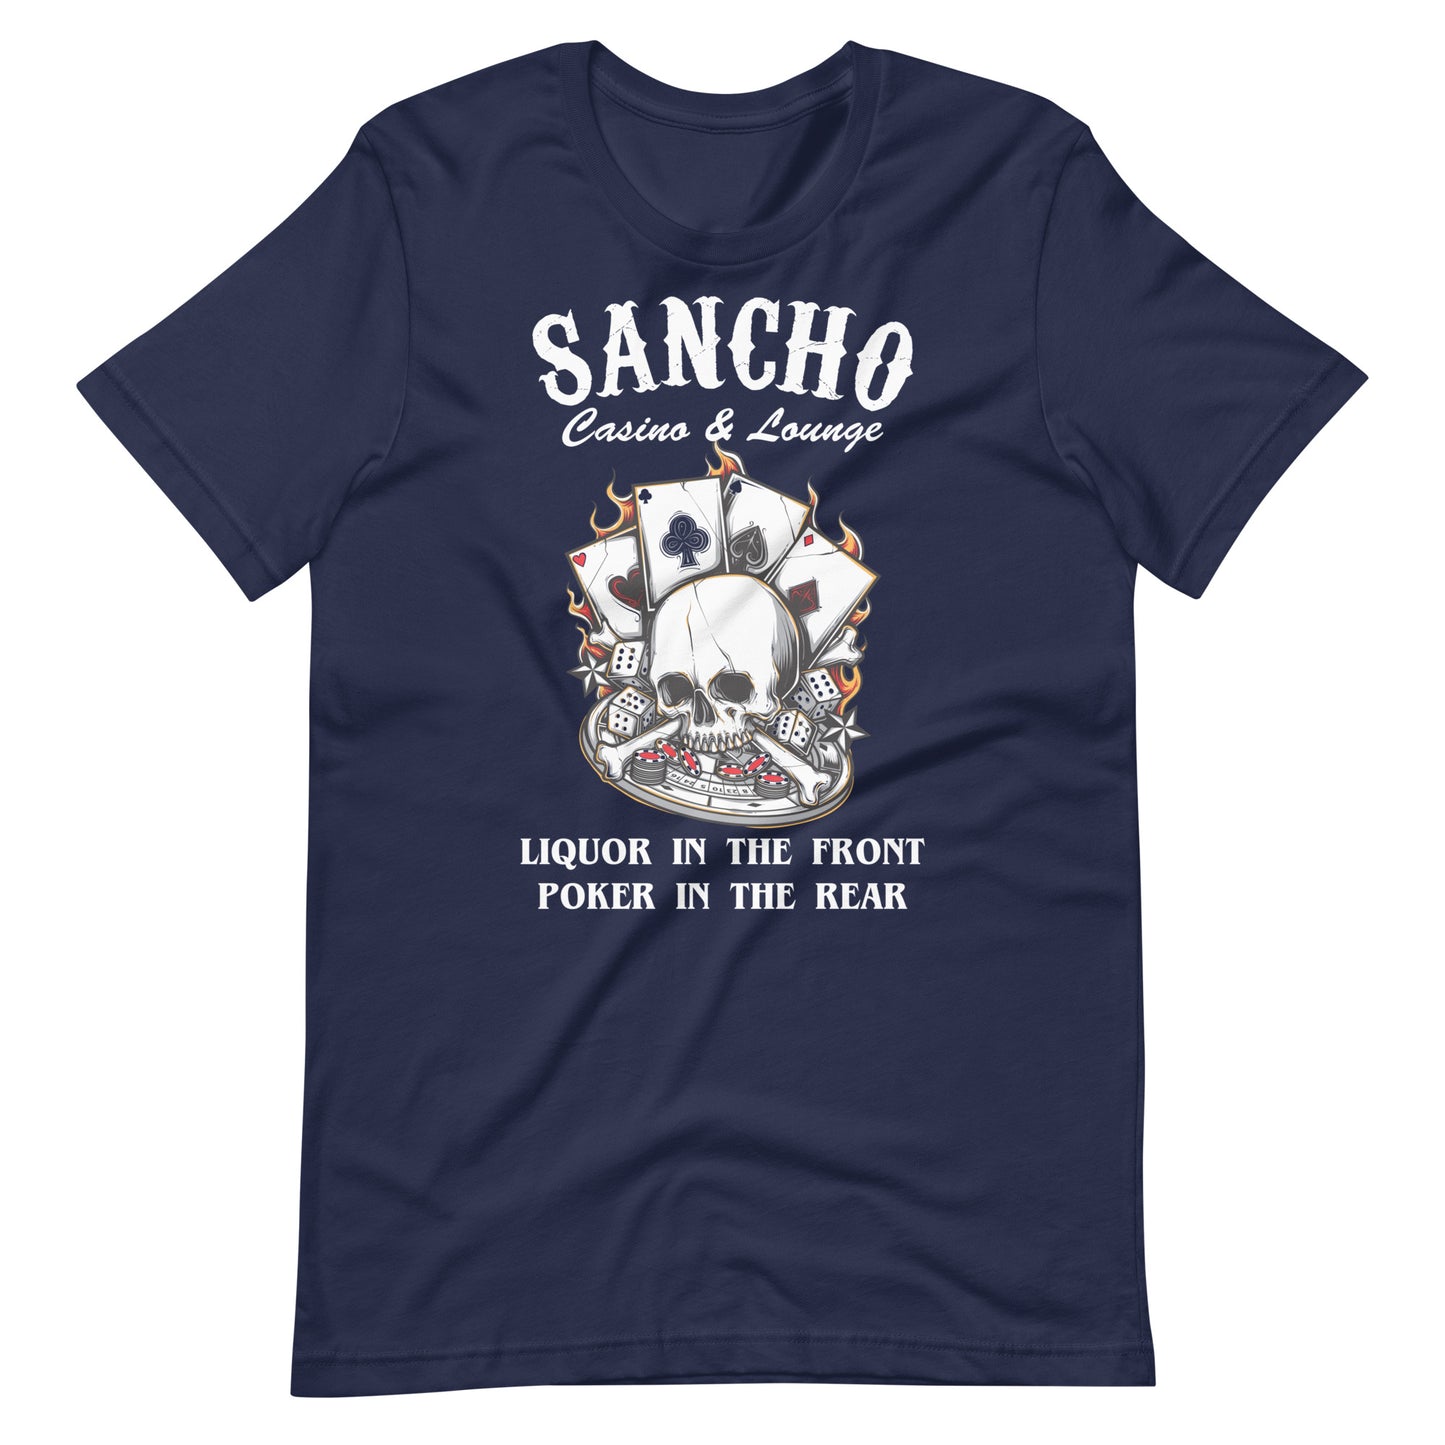 Sancho Casino & Lounge T-Shirt